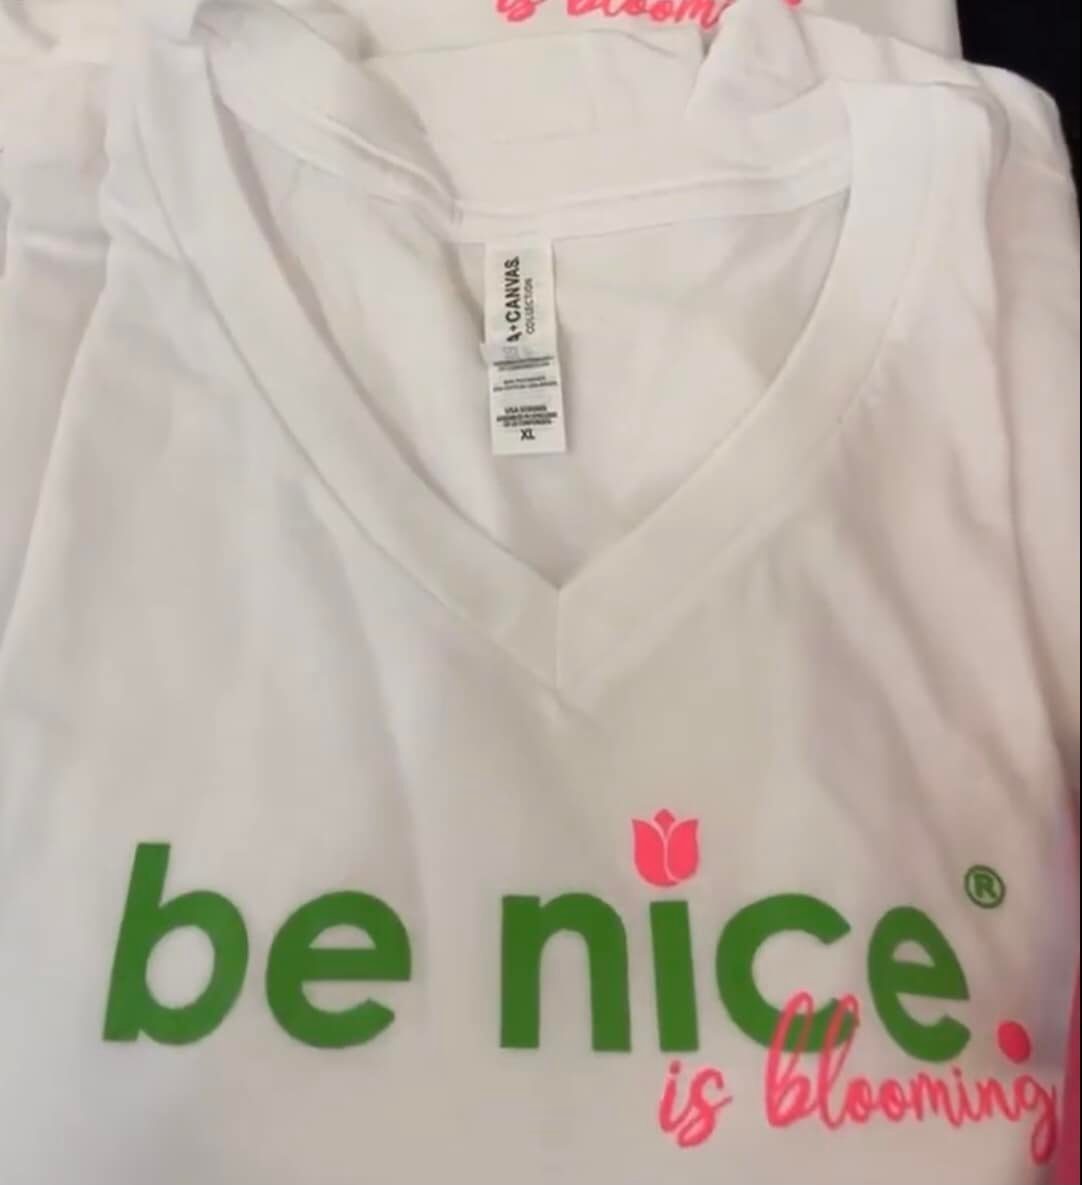 be nice. is blooming